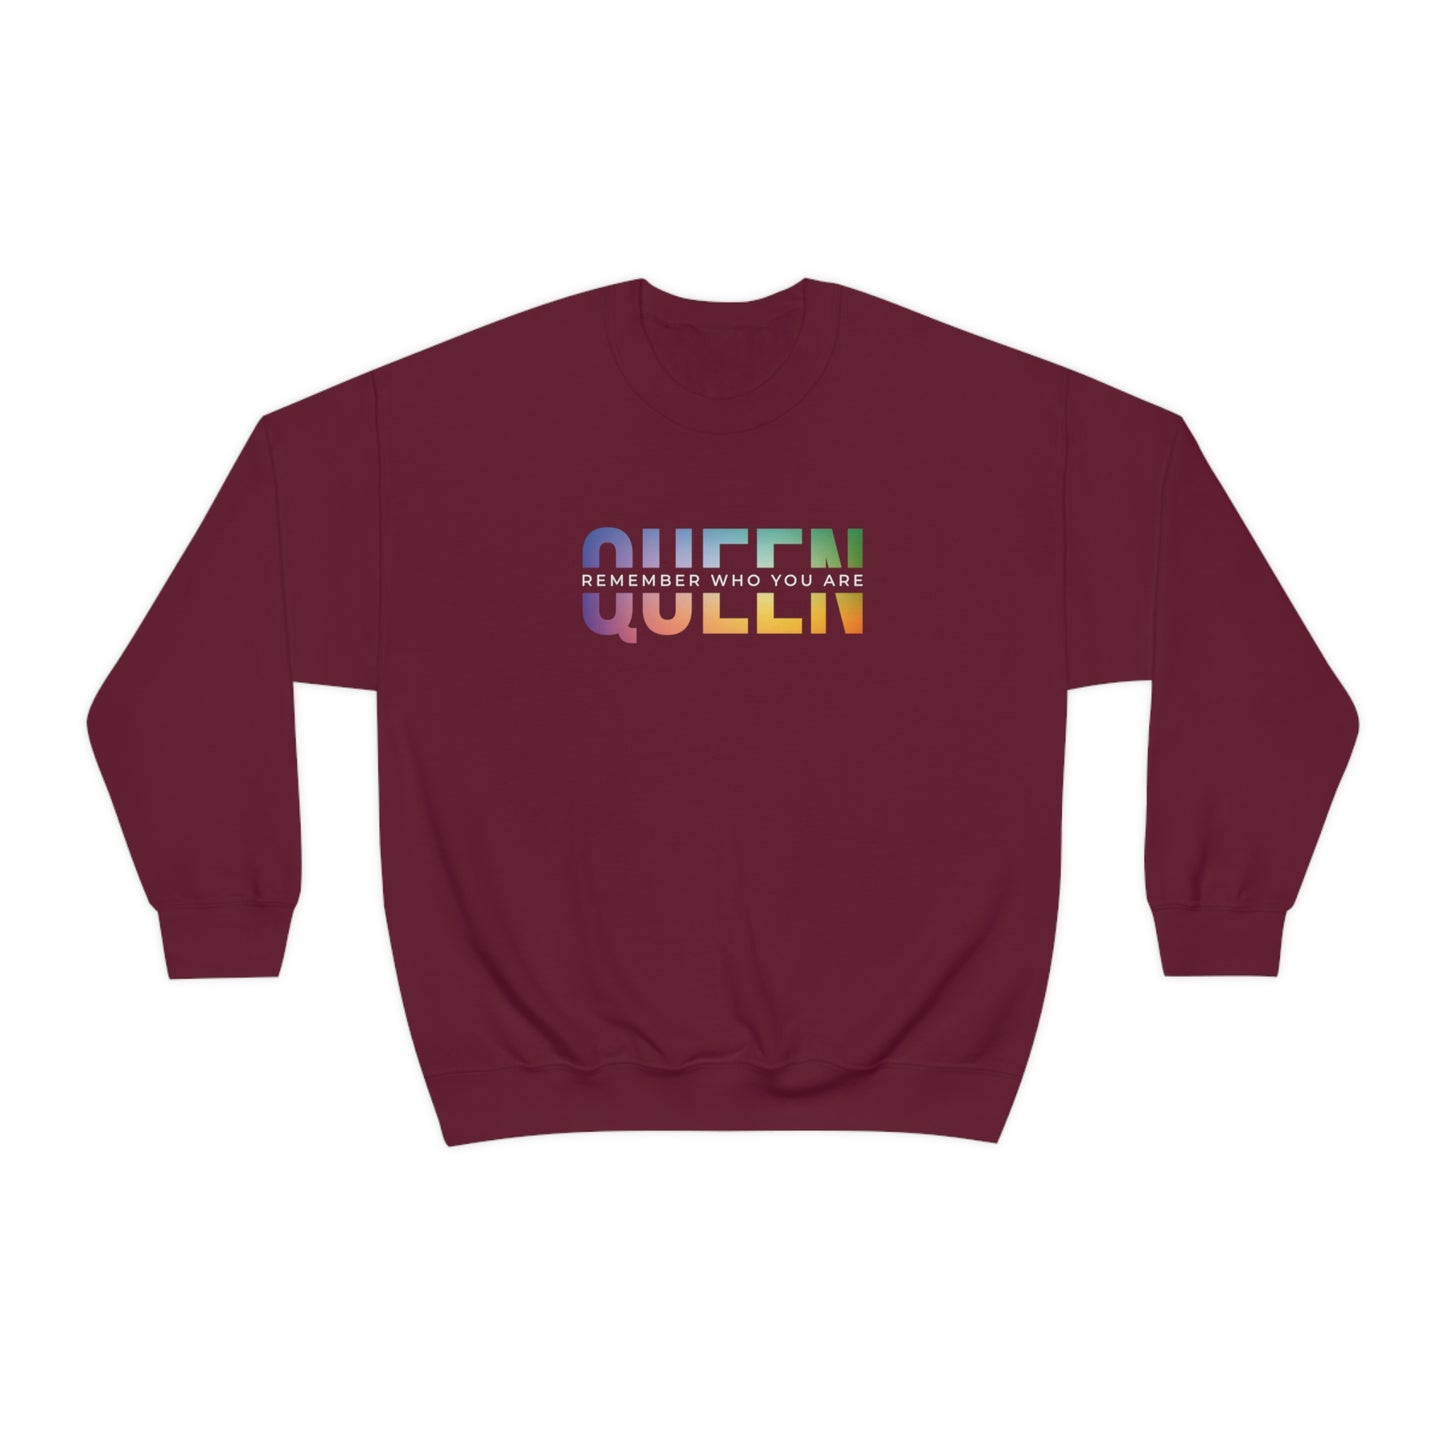 QUEEN Multi-color Crewneck Sweatshirt